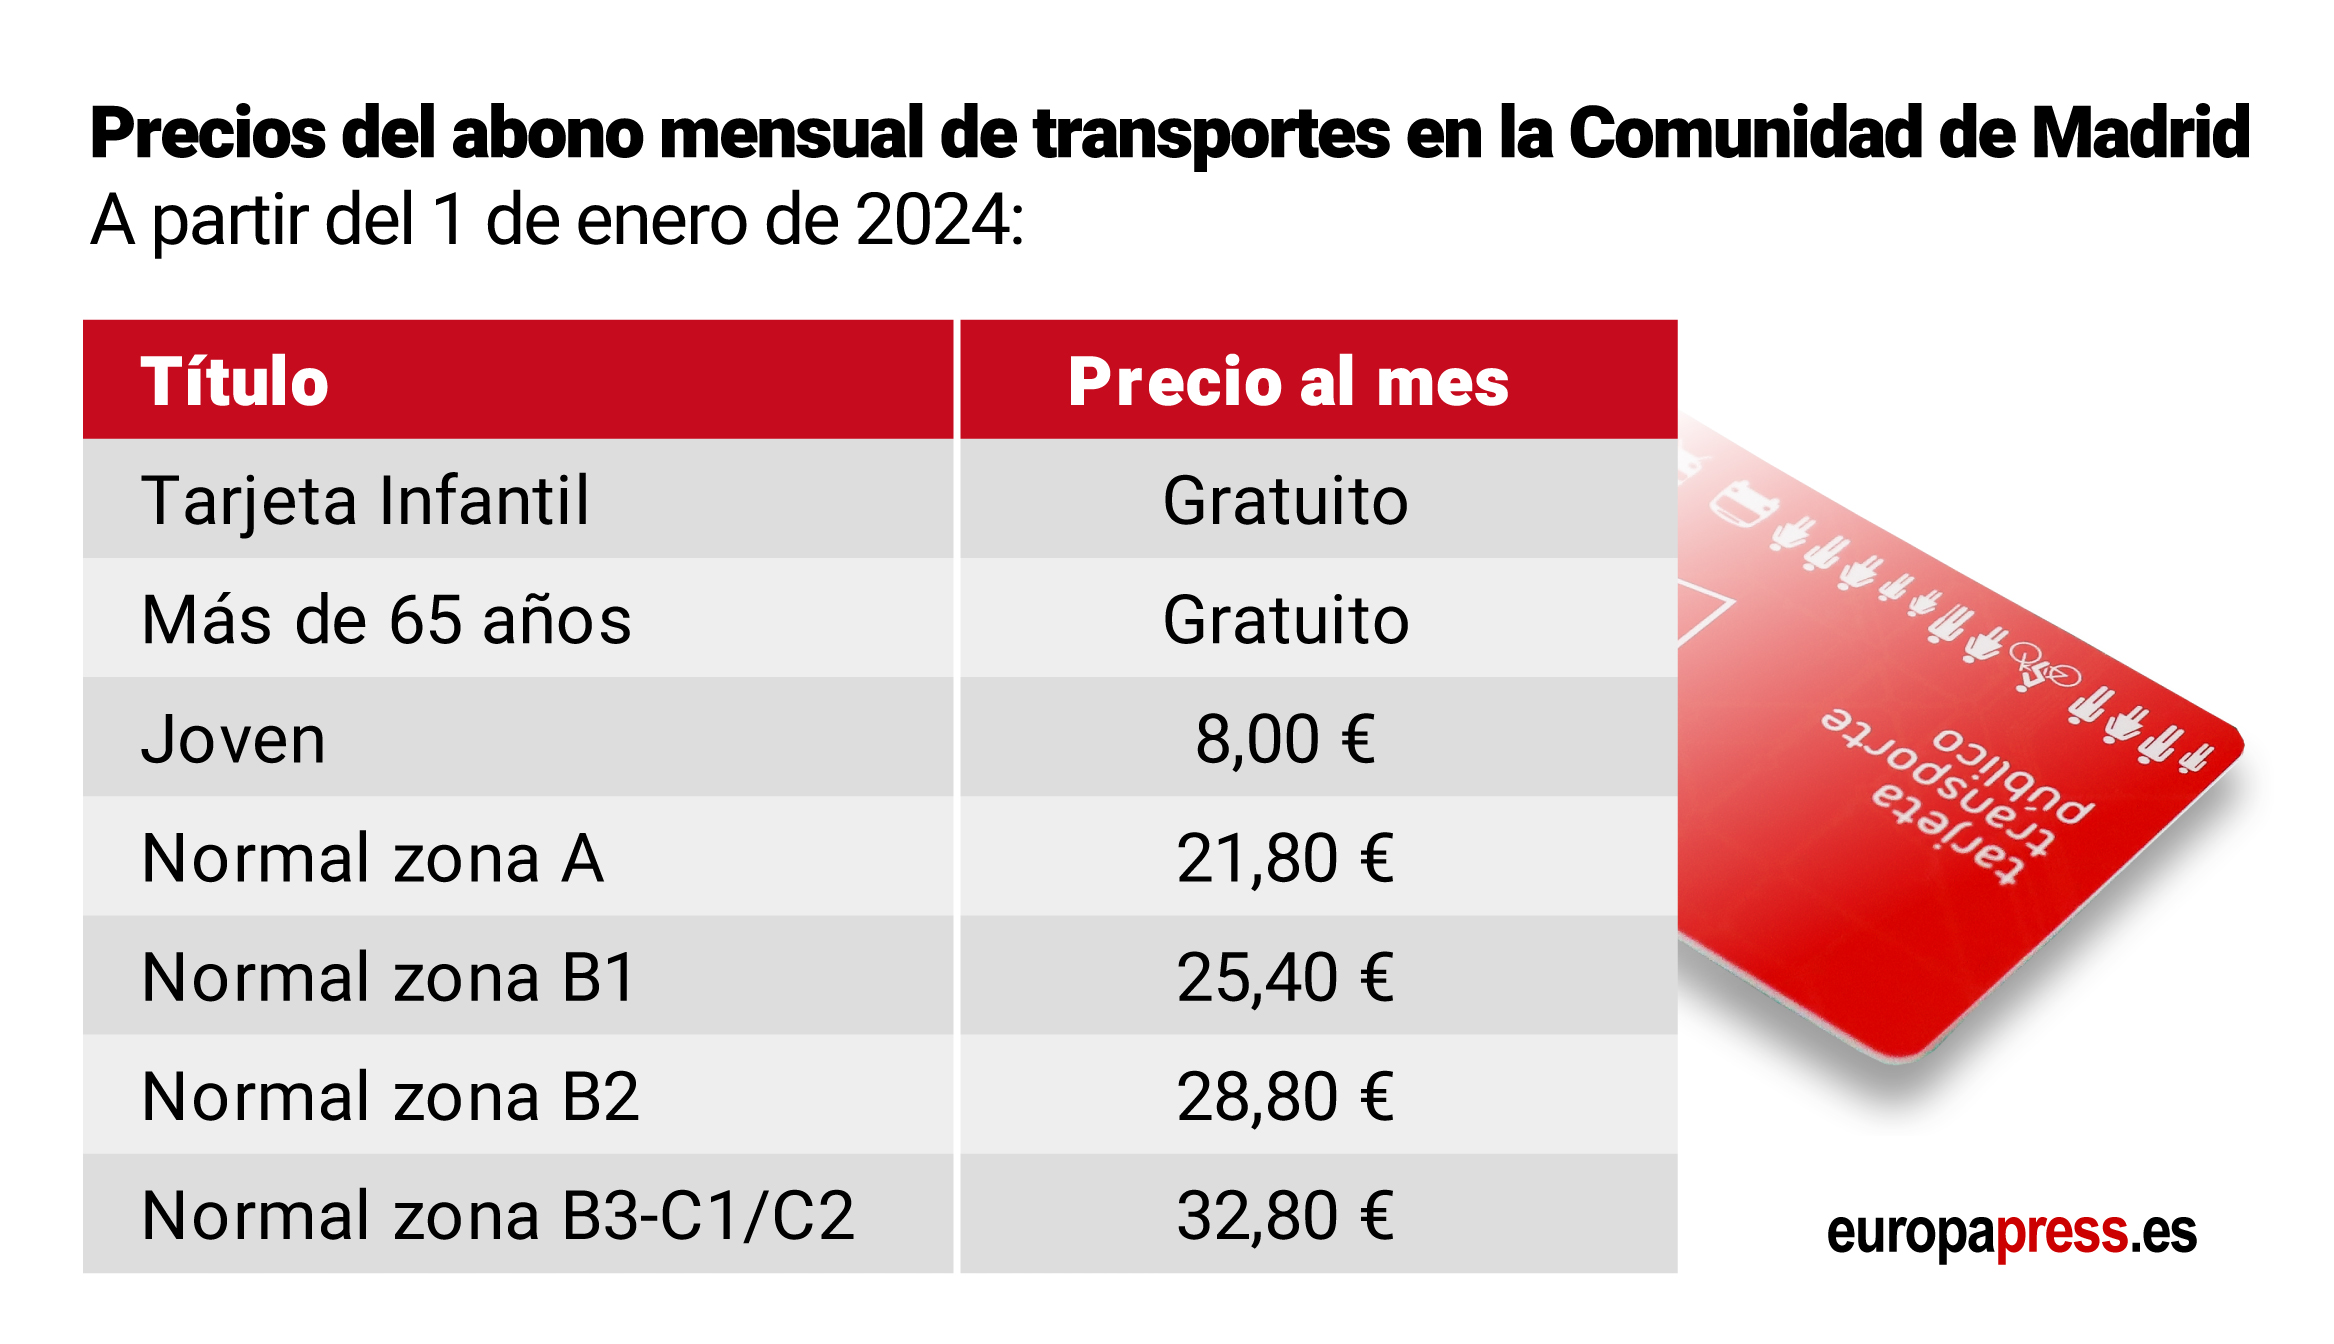 Precio del abono mensual de transporte en la Comunidad de Madrid a partir del 1 de enero de 2024